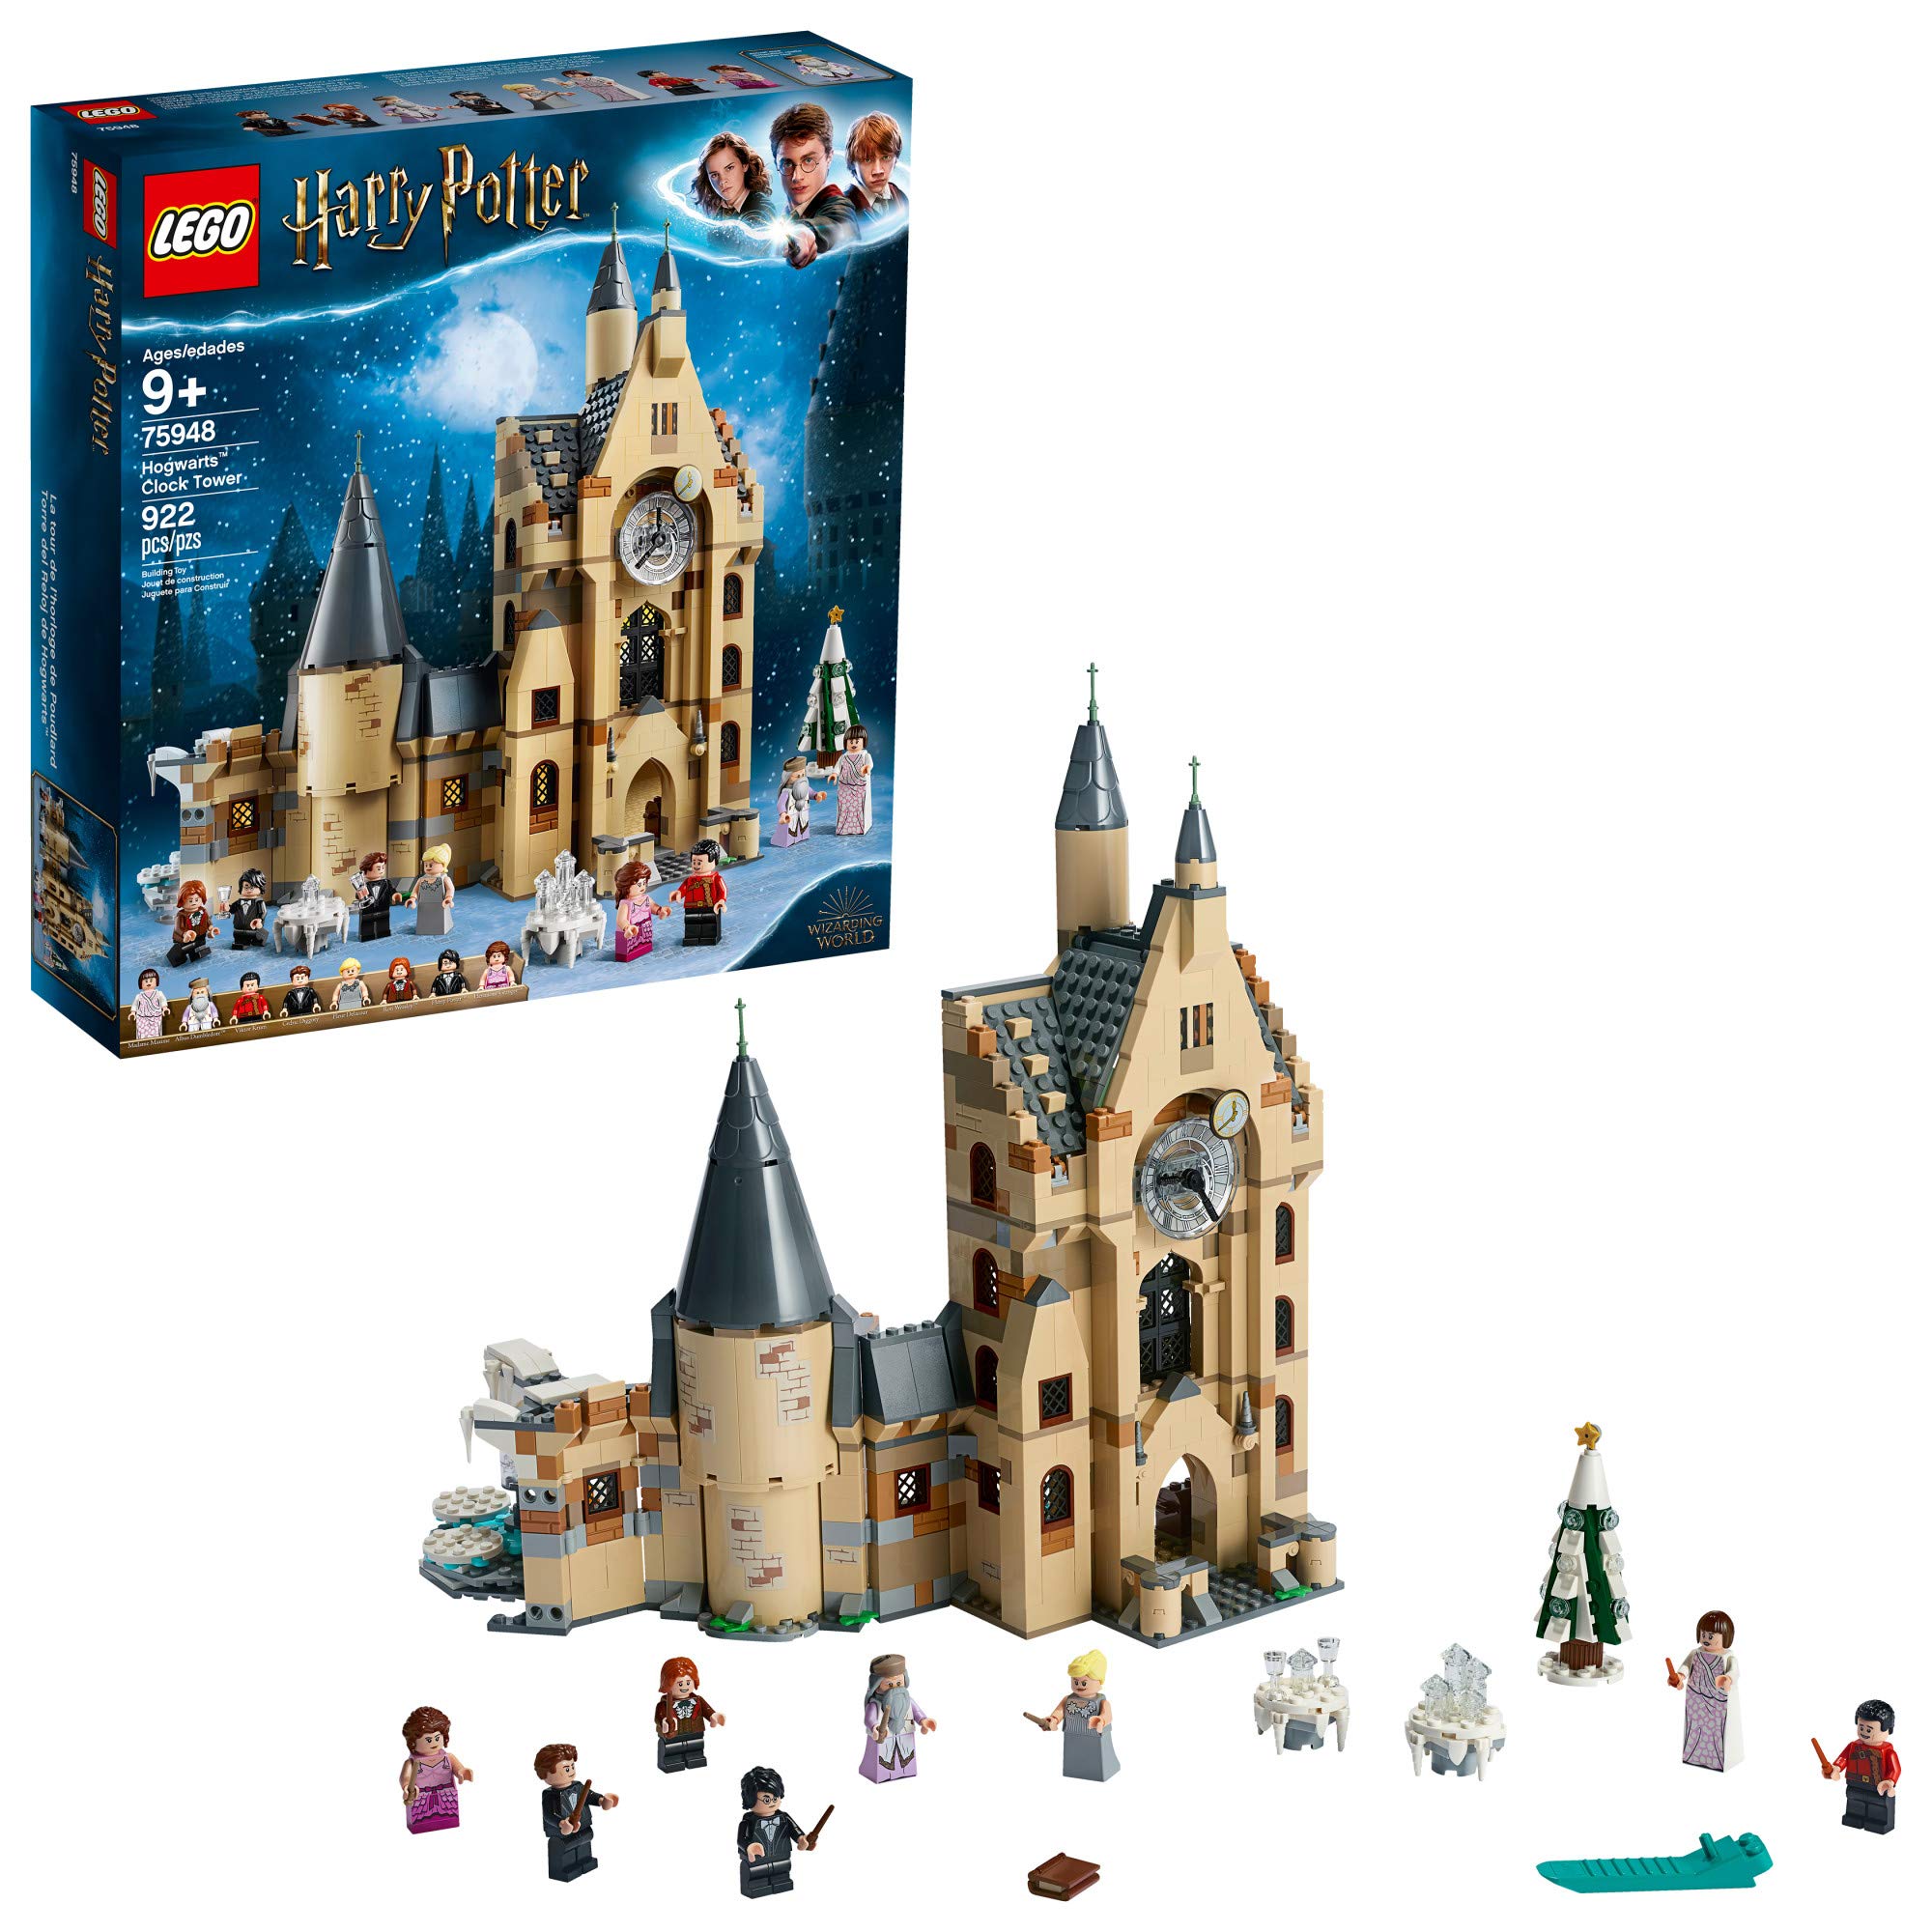 LEGO 哈利·波特霍格沃茨钟楼 75948 拼搭和玩乐塔楼套装，含哈利·波特小人仔、热门哈利·波特礼物和玩具...